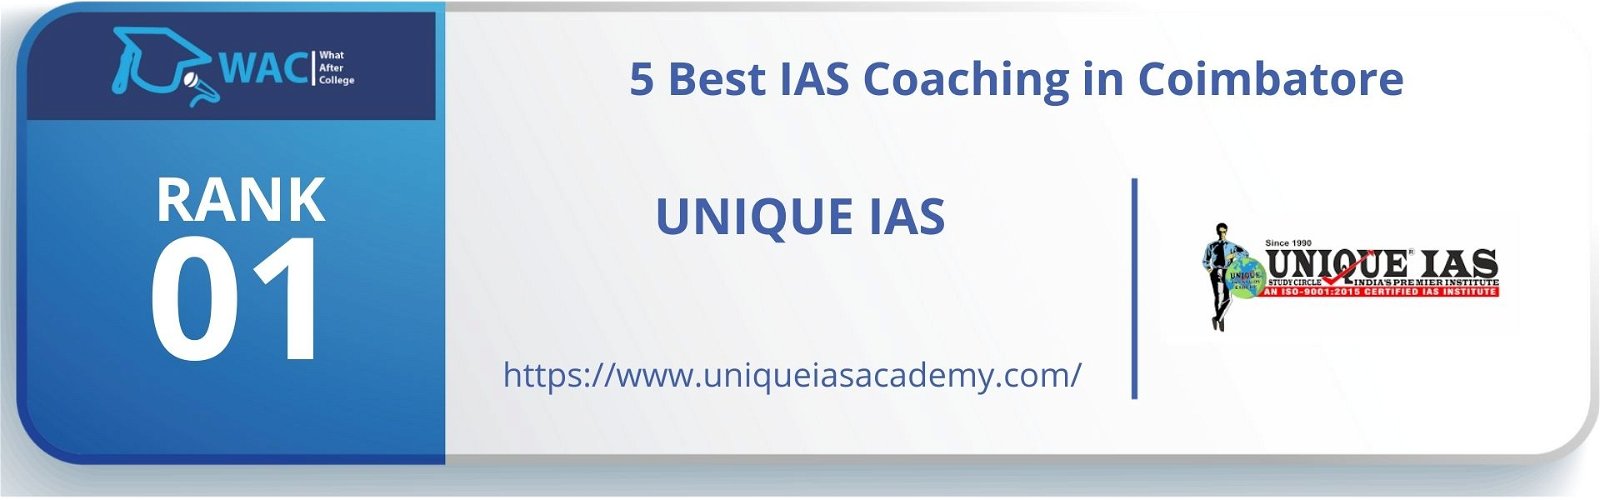 5 Best IAS Coaching in Coimbatore Rank 1: Unique IAS Coimbatore